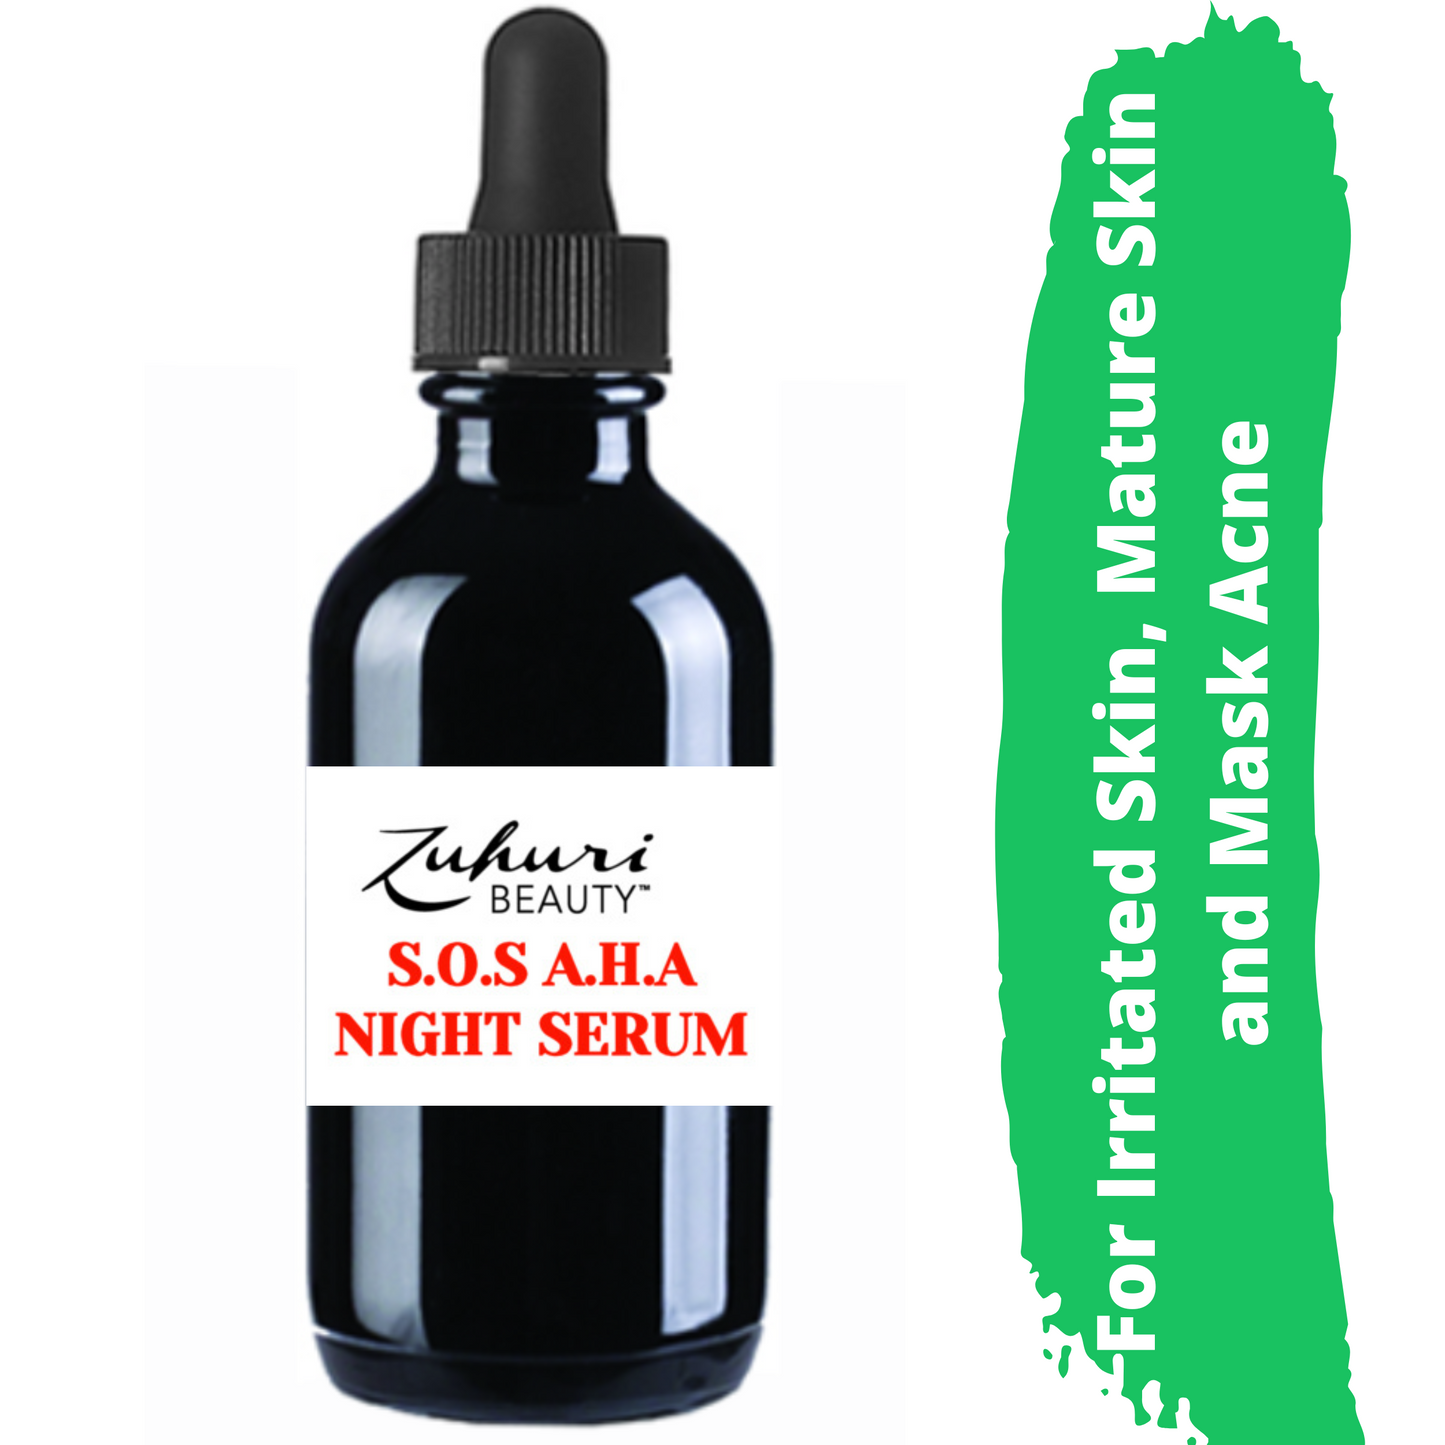 
                  
                    Night Serum, Mask Acne, Night cream, Aloe Vera, Hyaluronic Acid Serum, Dry skin serum, Eczema Serum
                  
                